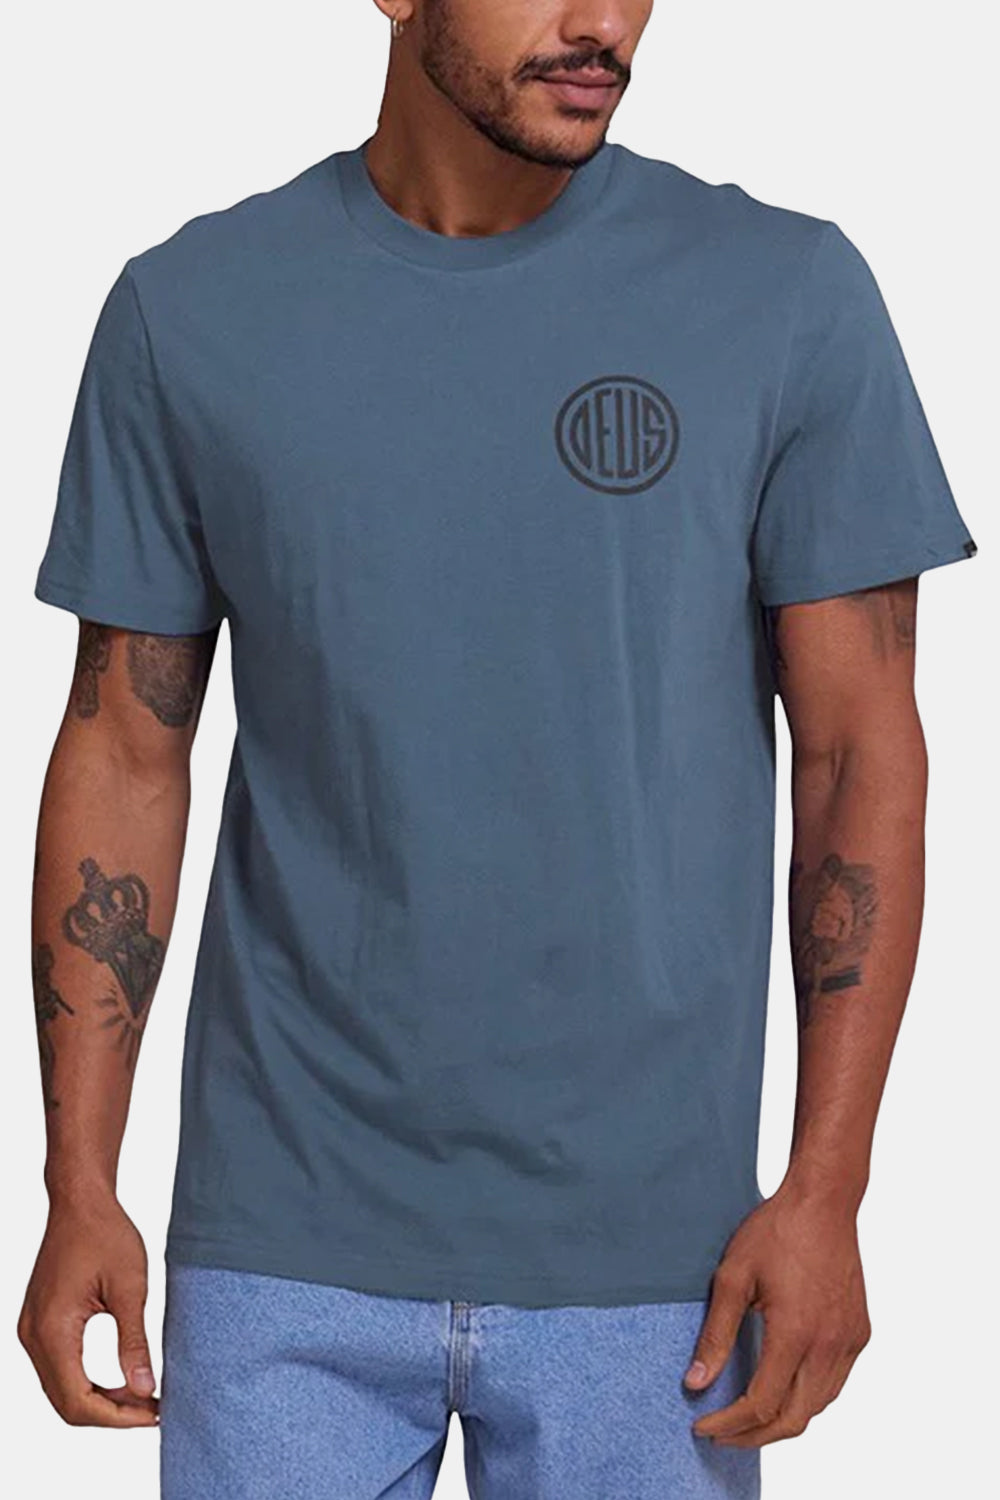 Deus Clutch T-shirt (røgblå)